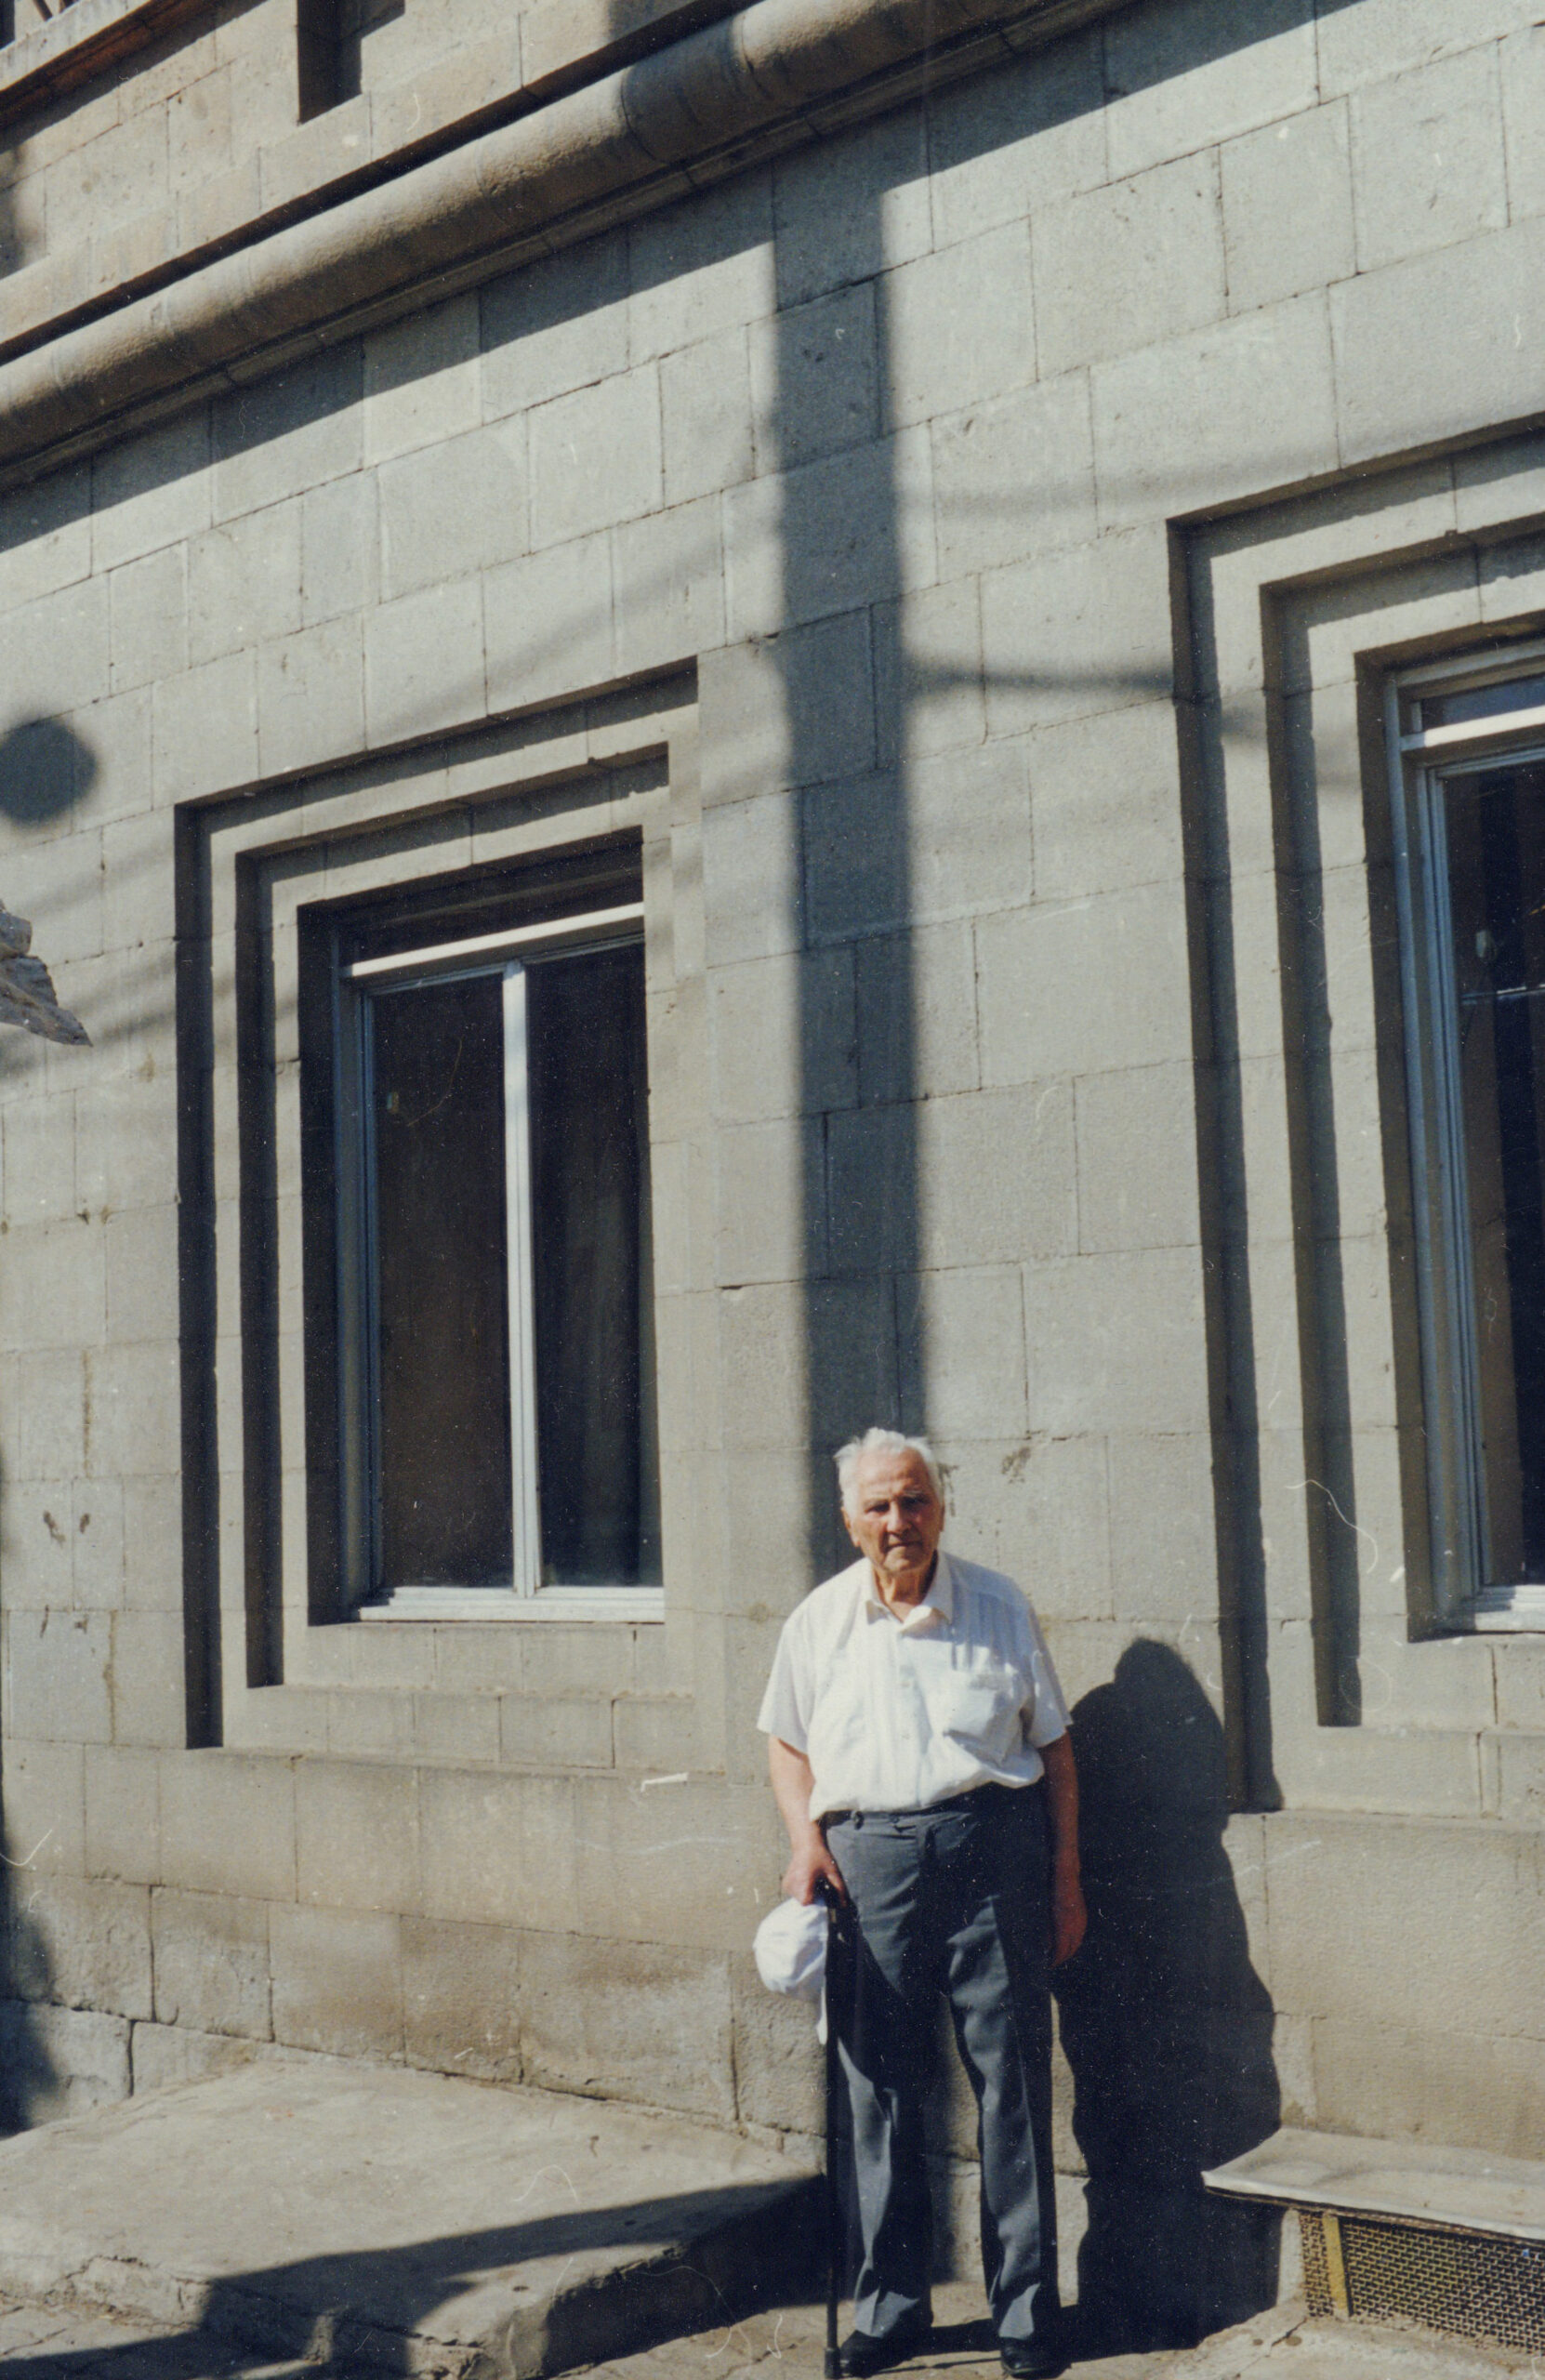 Ճարտարապետ Տ. Մարությանը իր նախագծած Պոլիտեխնիկական համալսարանի մասնաշենքի մոտ